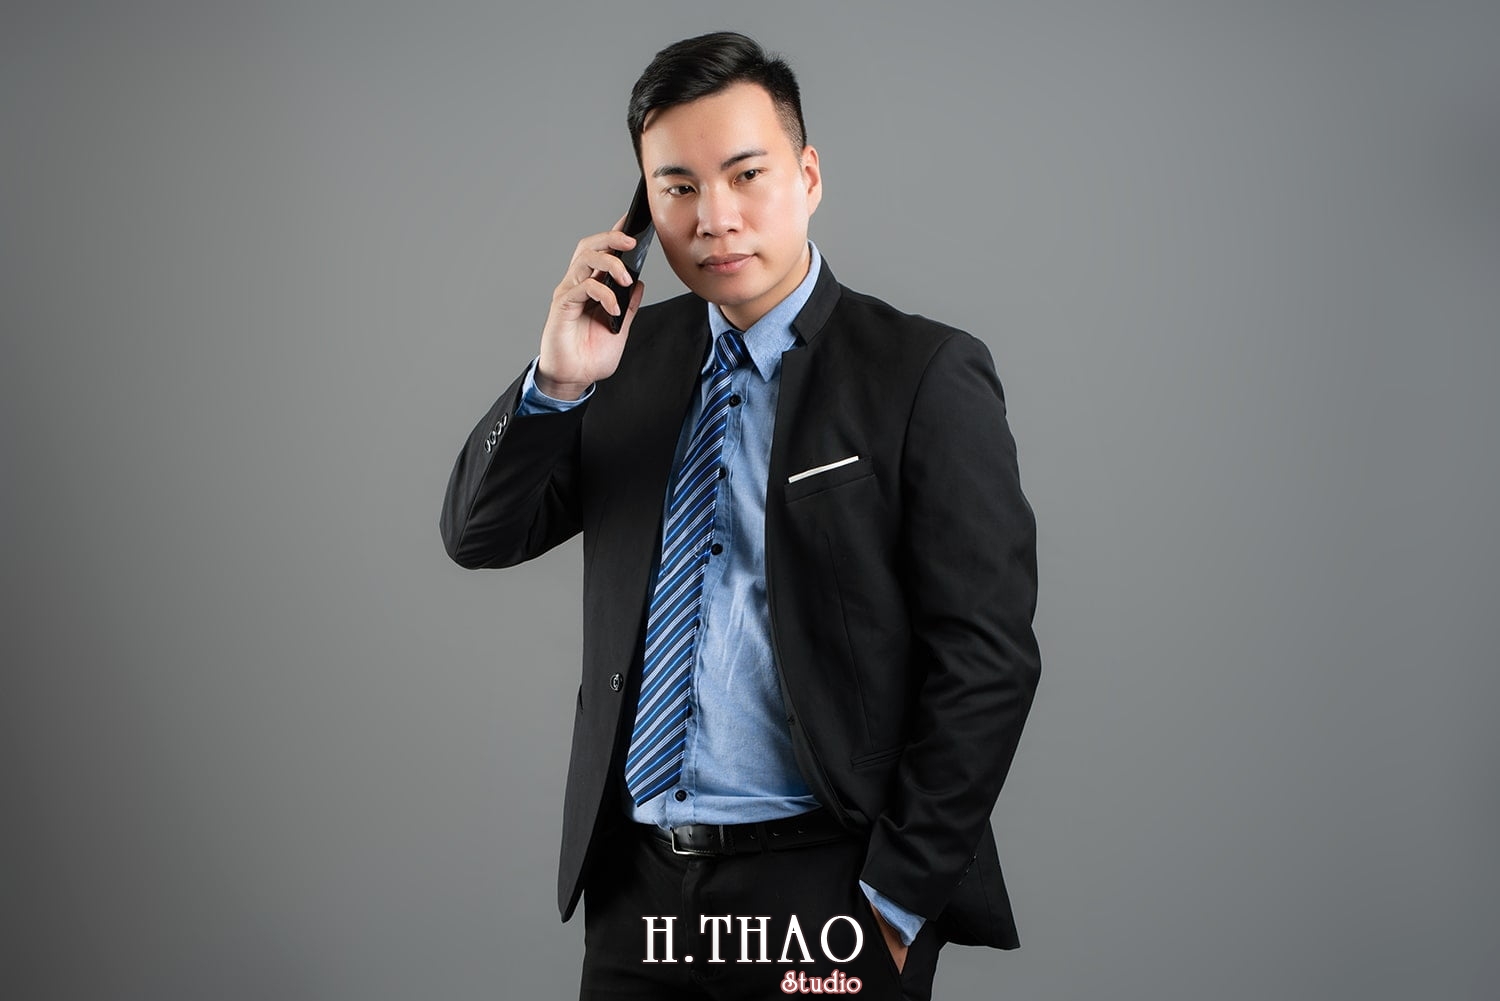 Anh profile 7 1 - 49 cách tạo dáng chụp ảnh profile đẹp, chuyên nghiệp nhất- HThao Studio